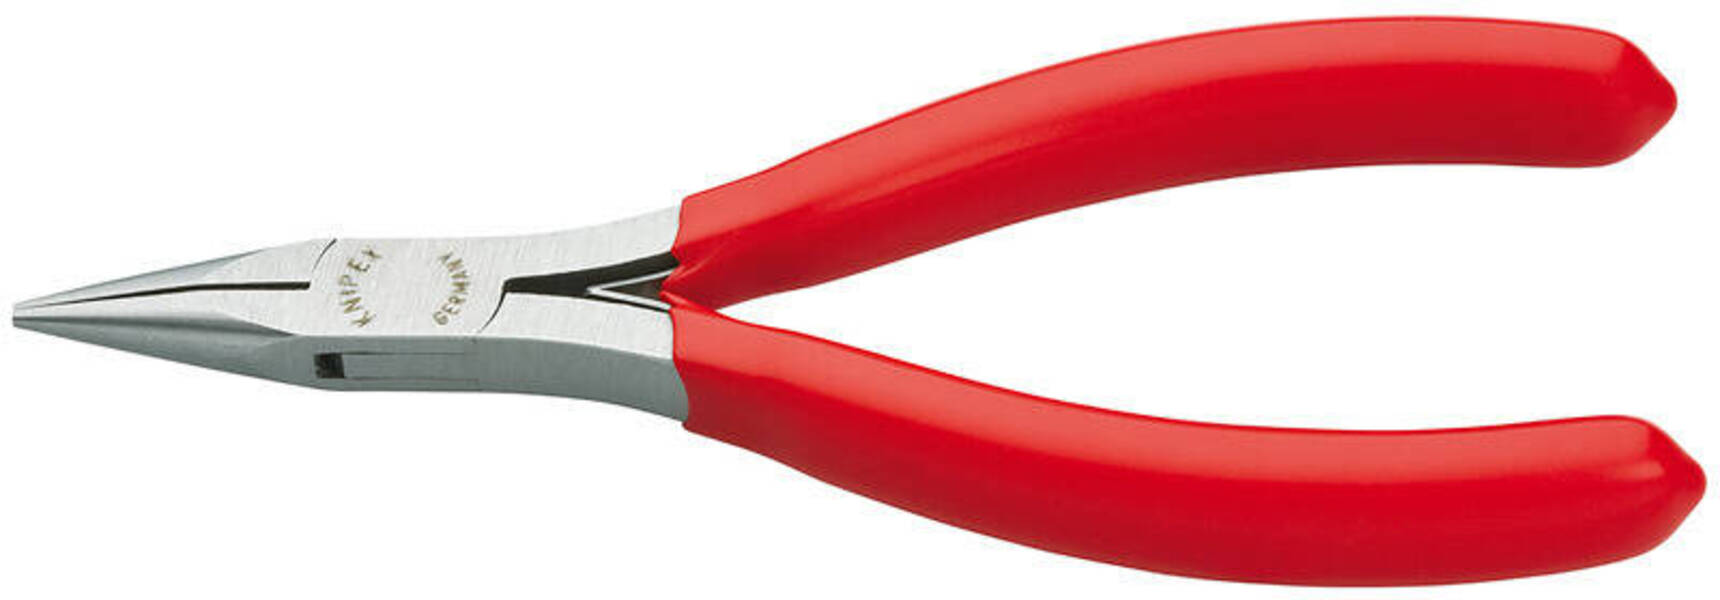 KNIPEX Плоскогубцы захватные для электроники, плоскокруглые губки, L-115 мм, 1-к ручки